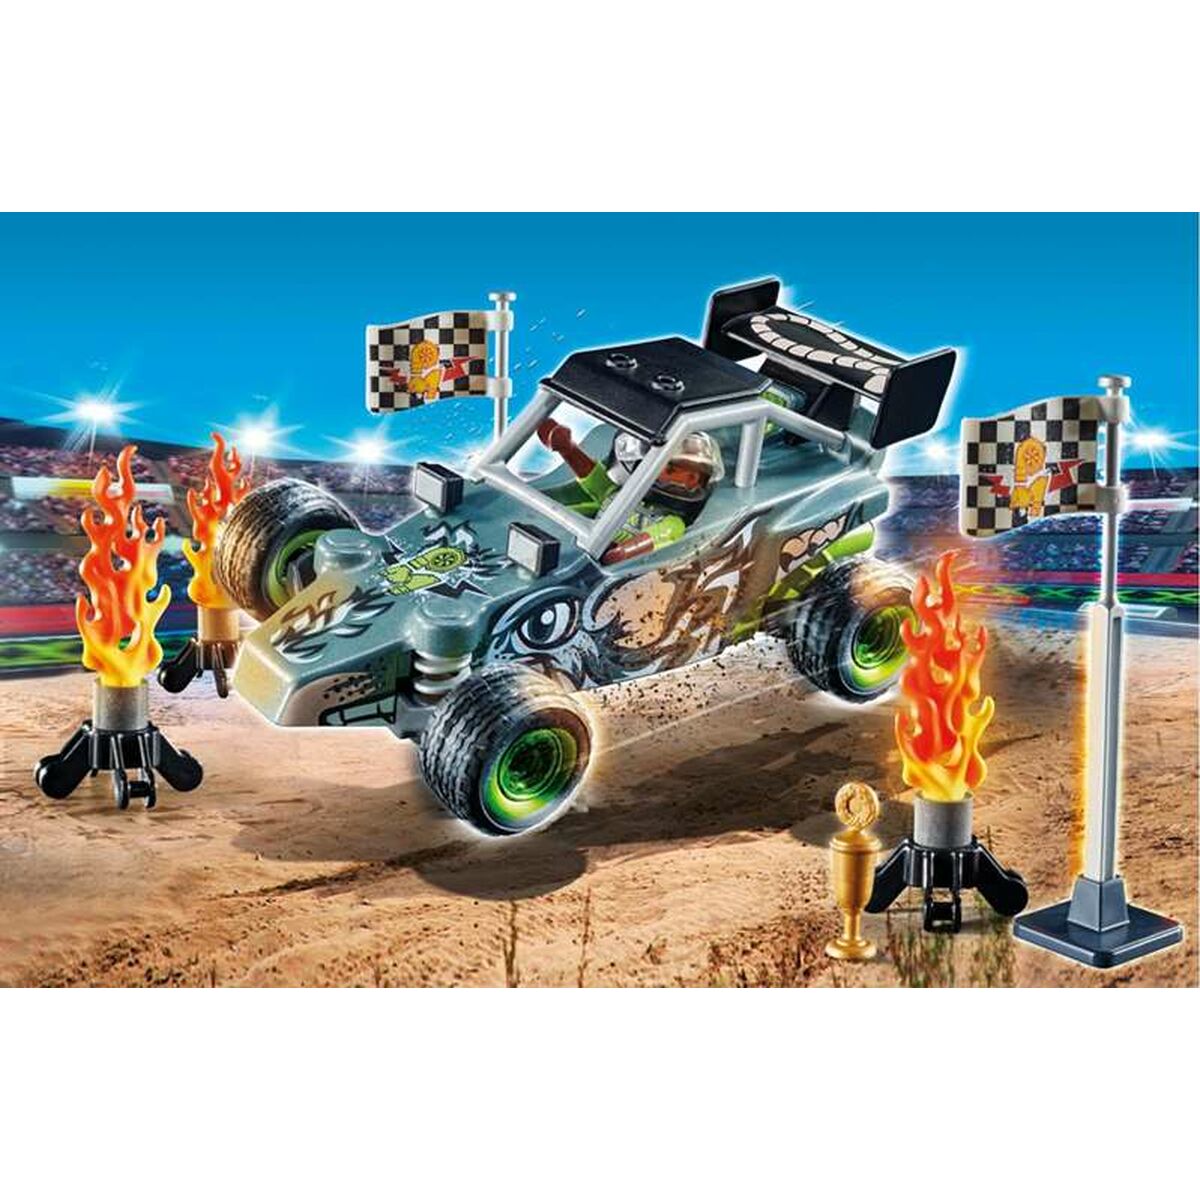 Playset Playmobil Stuntshow Racer 45 Pezzi - Disponibile in 3-4 giorni lavorativi